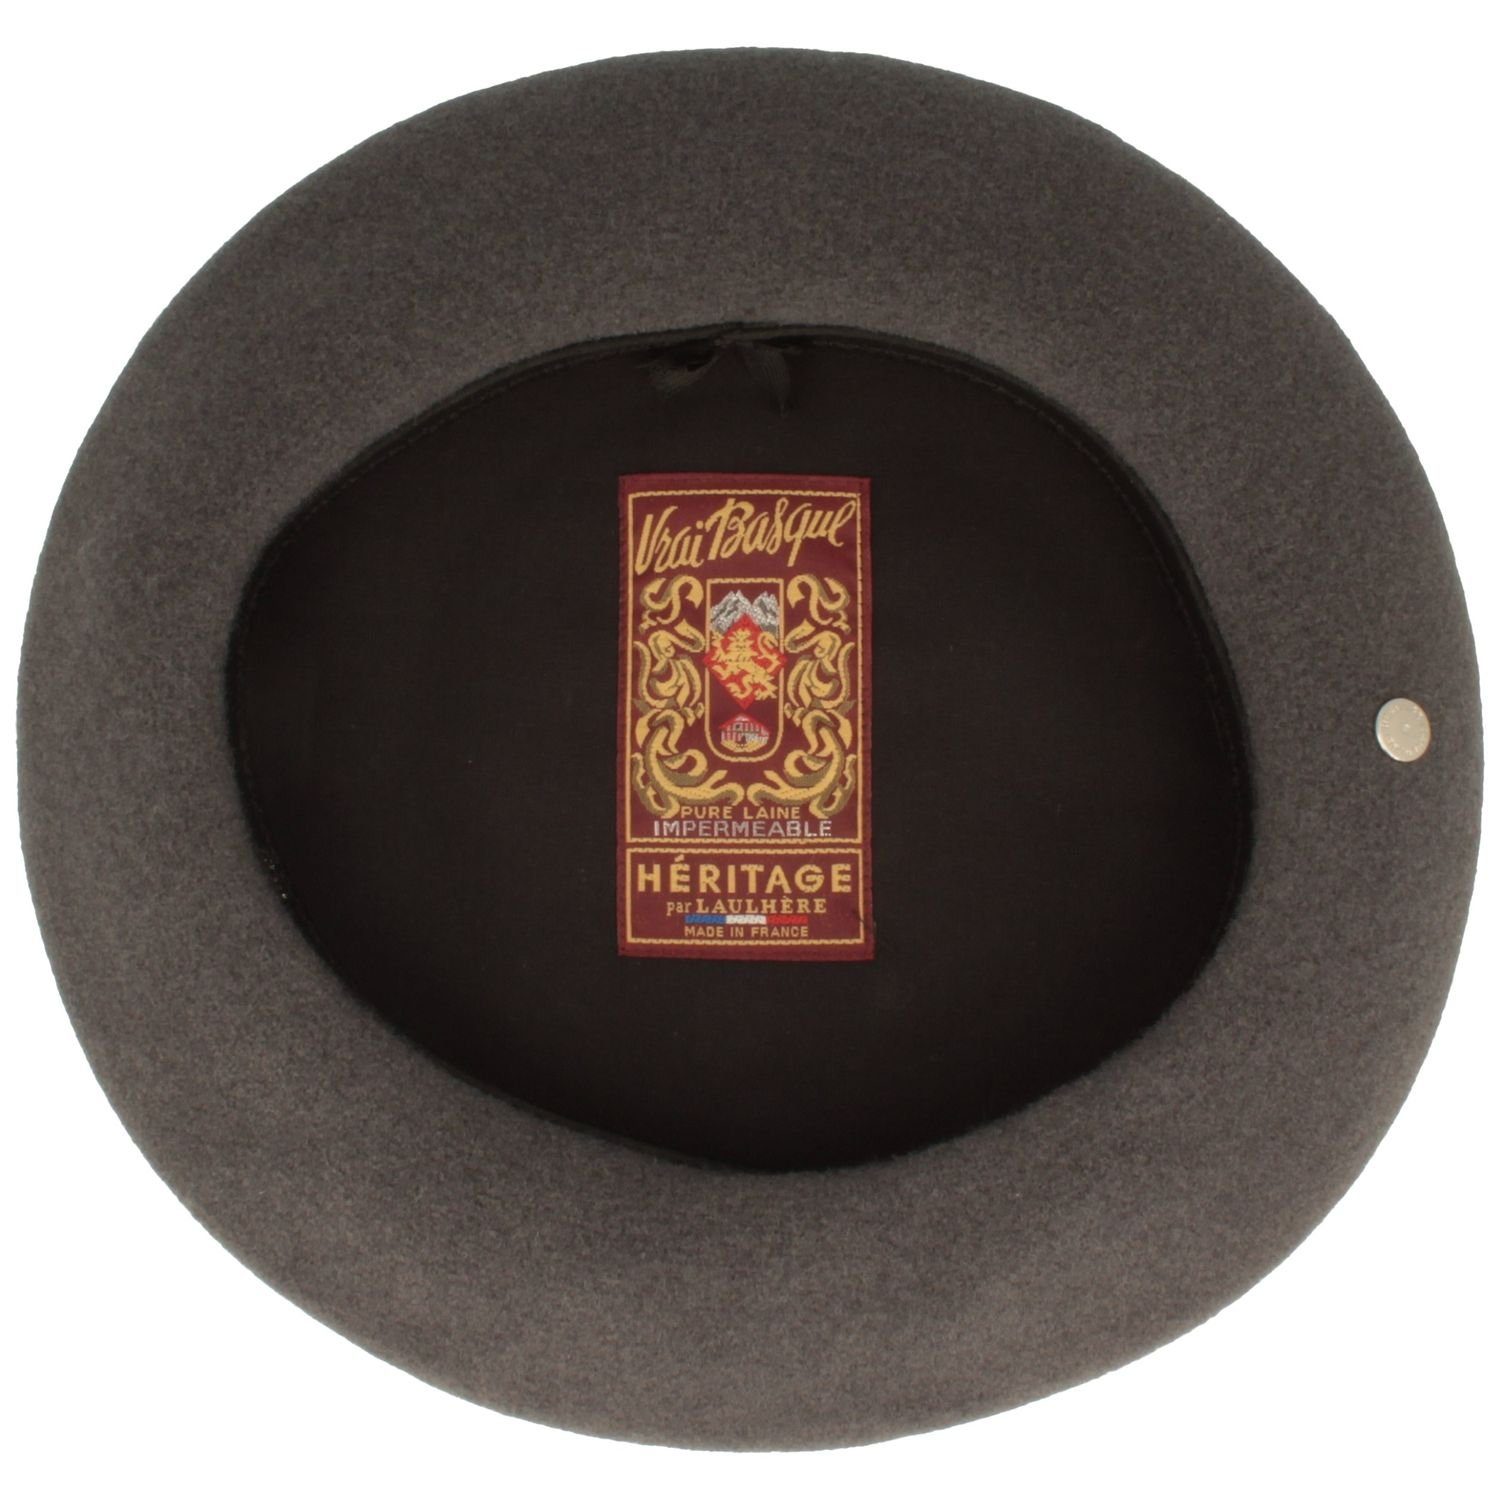 Anthracite französisch, Form Laulhere schmale original Baskenmütze